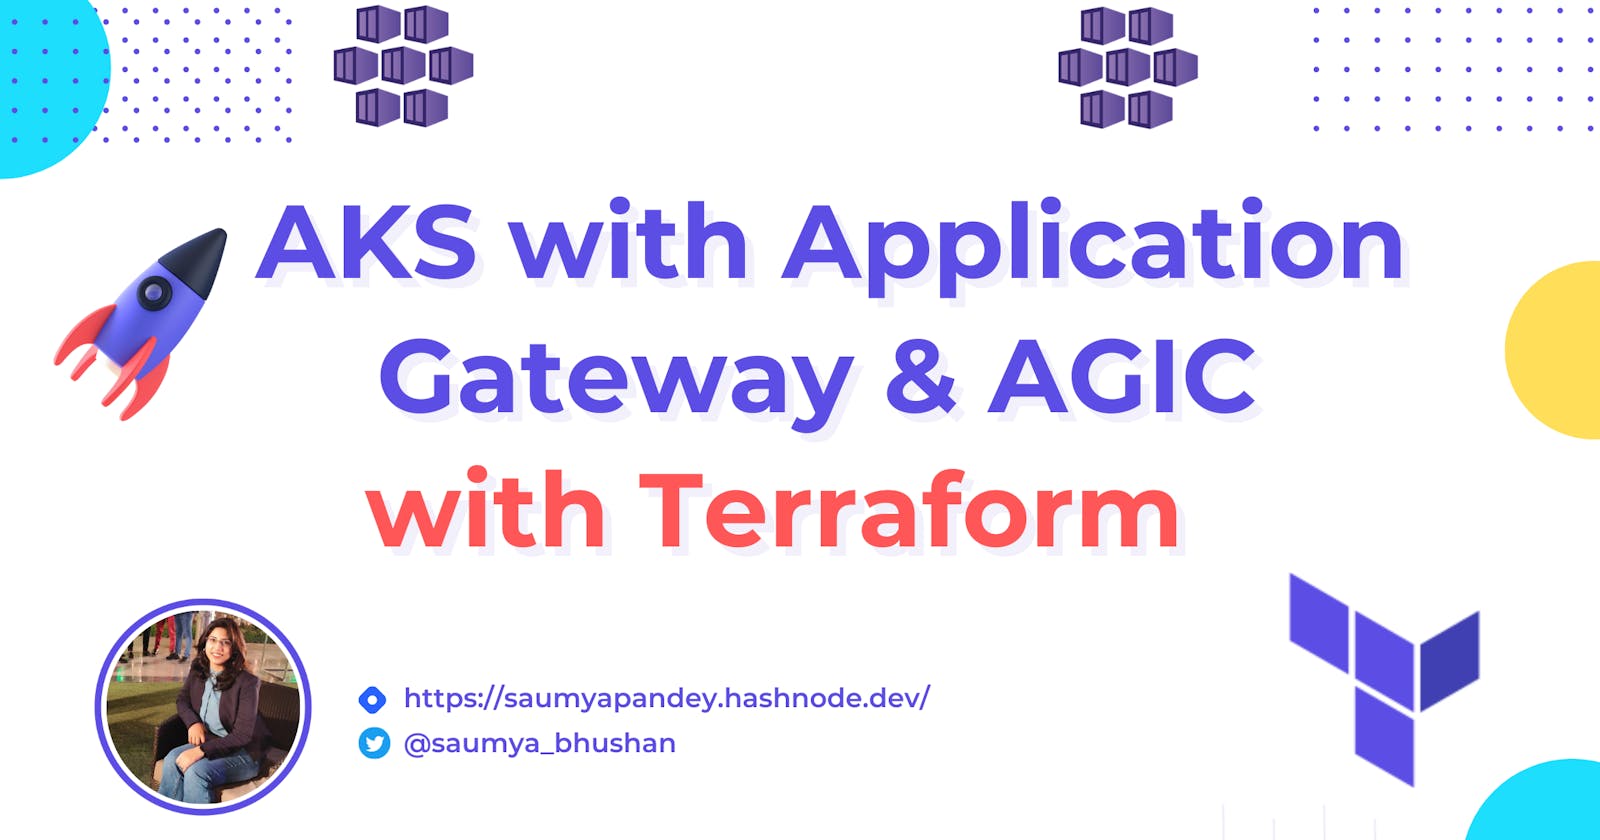 AKS with Application Gateway & AGIC using Terraform